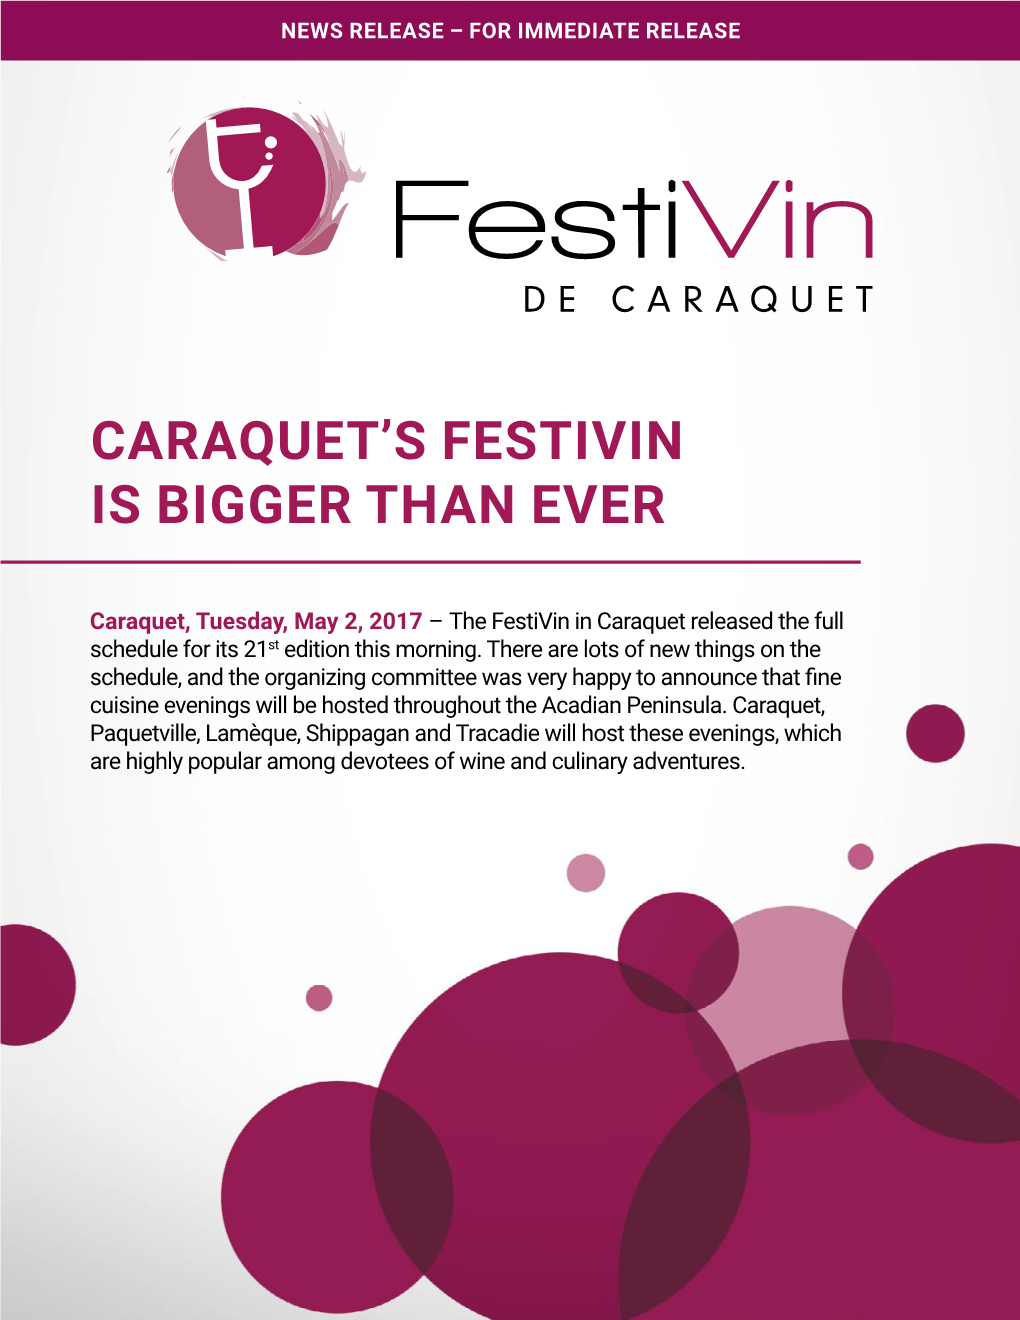 Caraquet's Festivin Is Bigger Than Ever